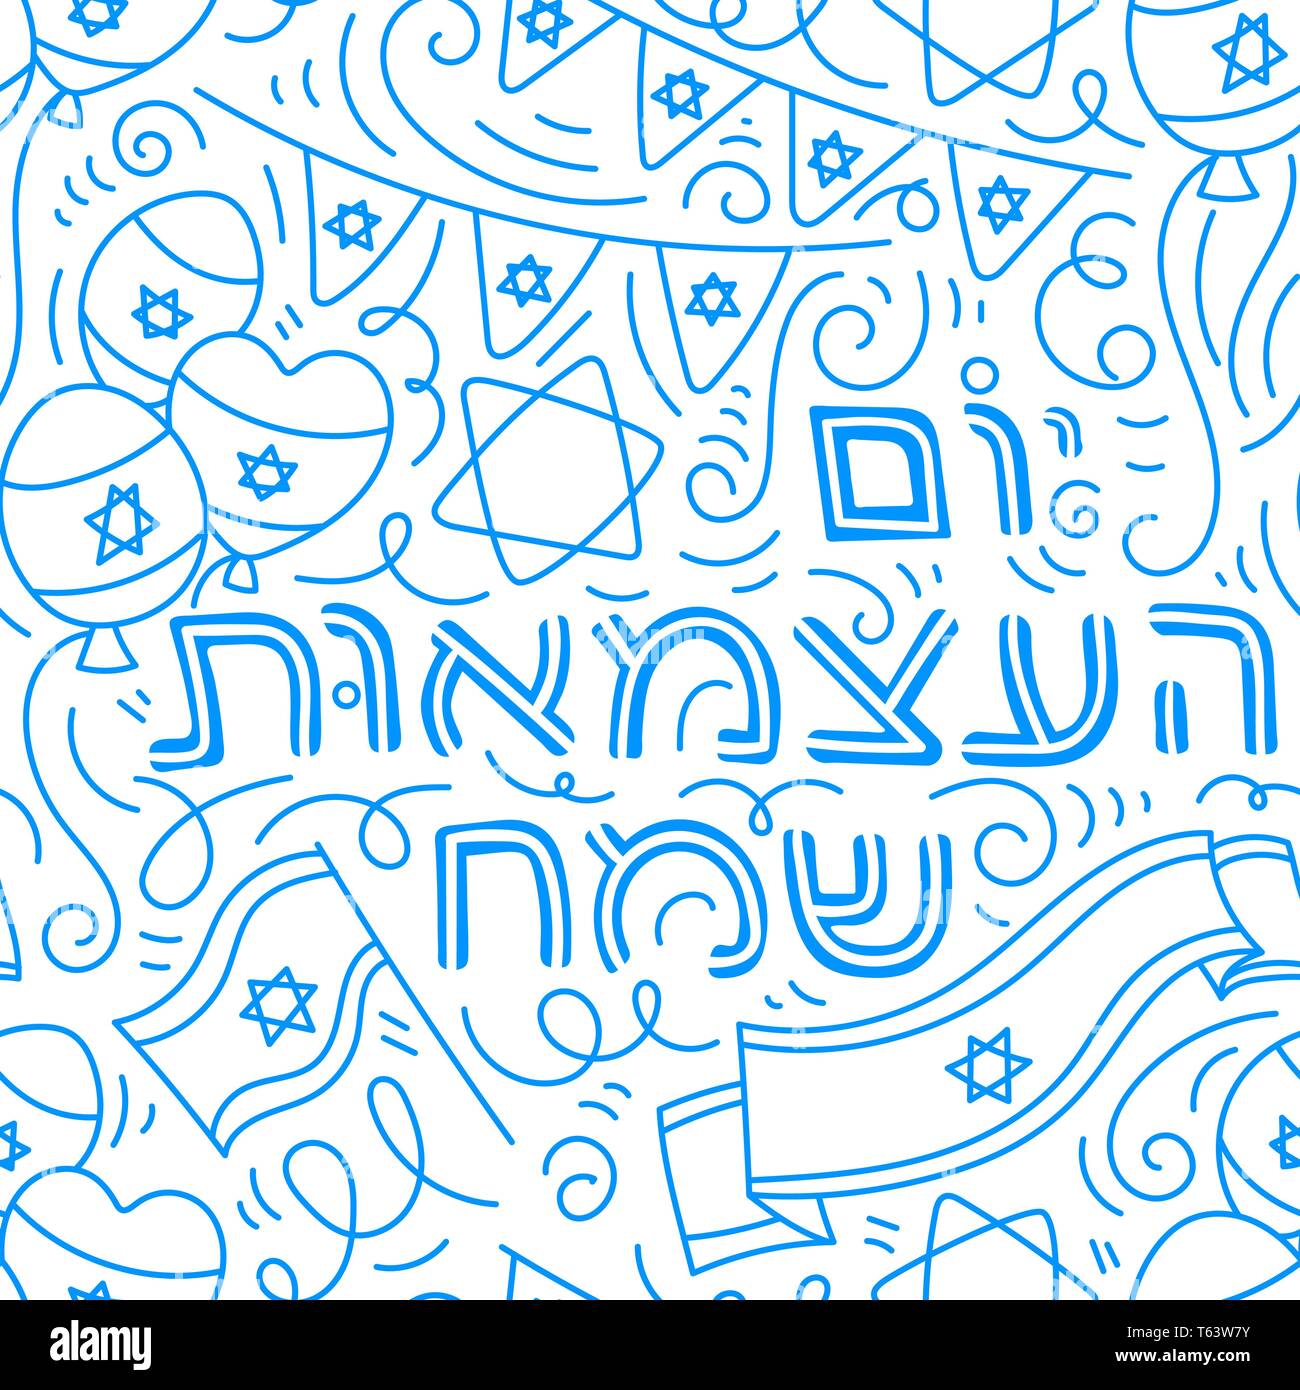 Heureux le jour de l'indépendance d'Israël (Yom Aatsmaout) en hébreu. Hand drawn doodle style. Illustration vecteur linéaire. Isolé sur fond blanc. Illustration de Vecteur